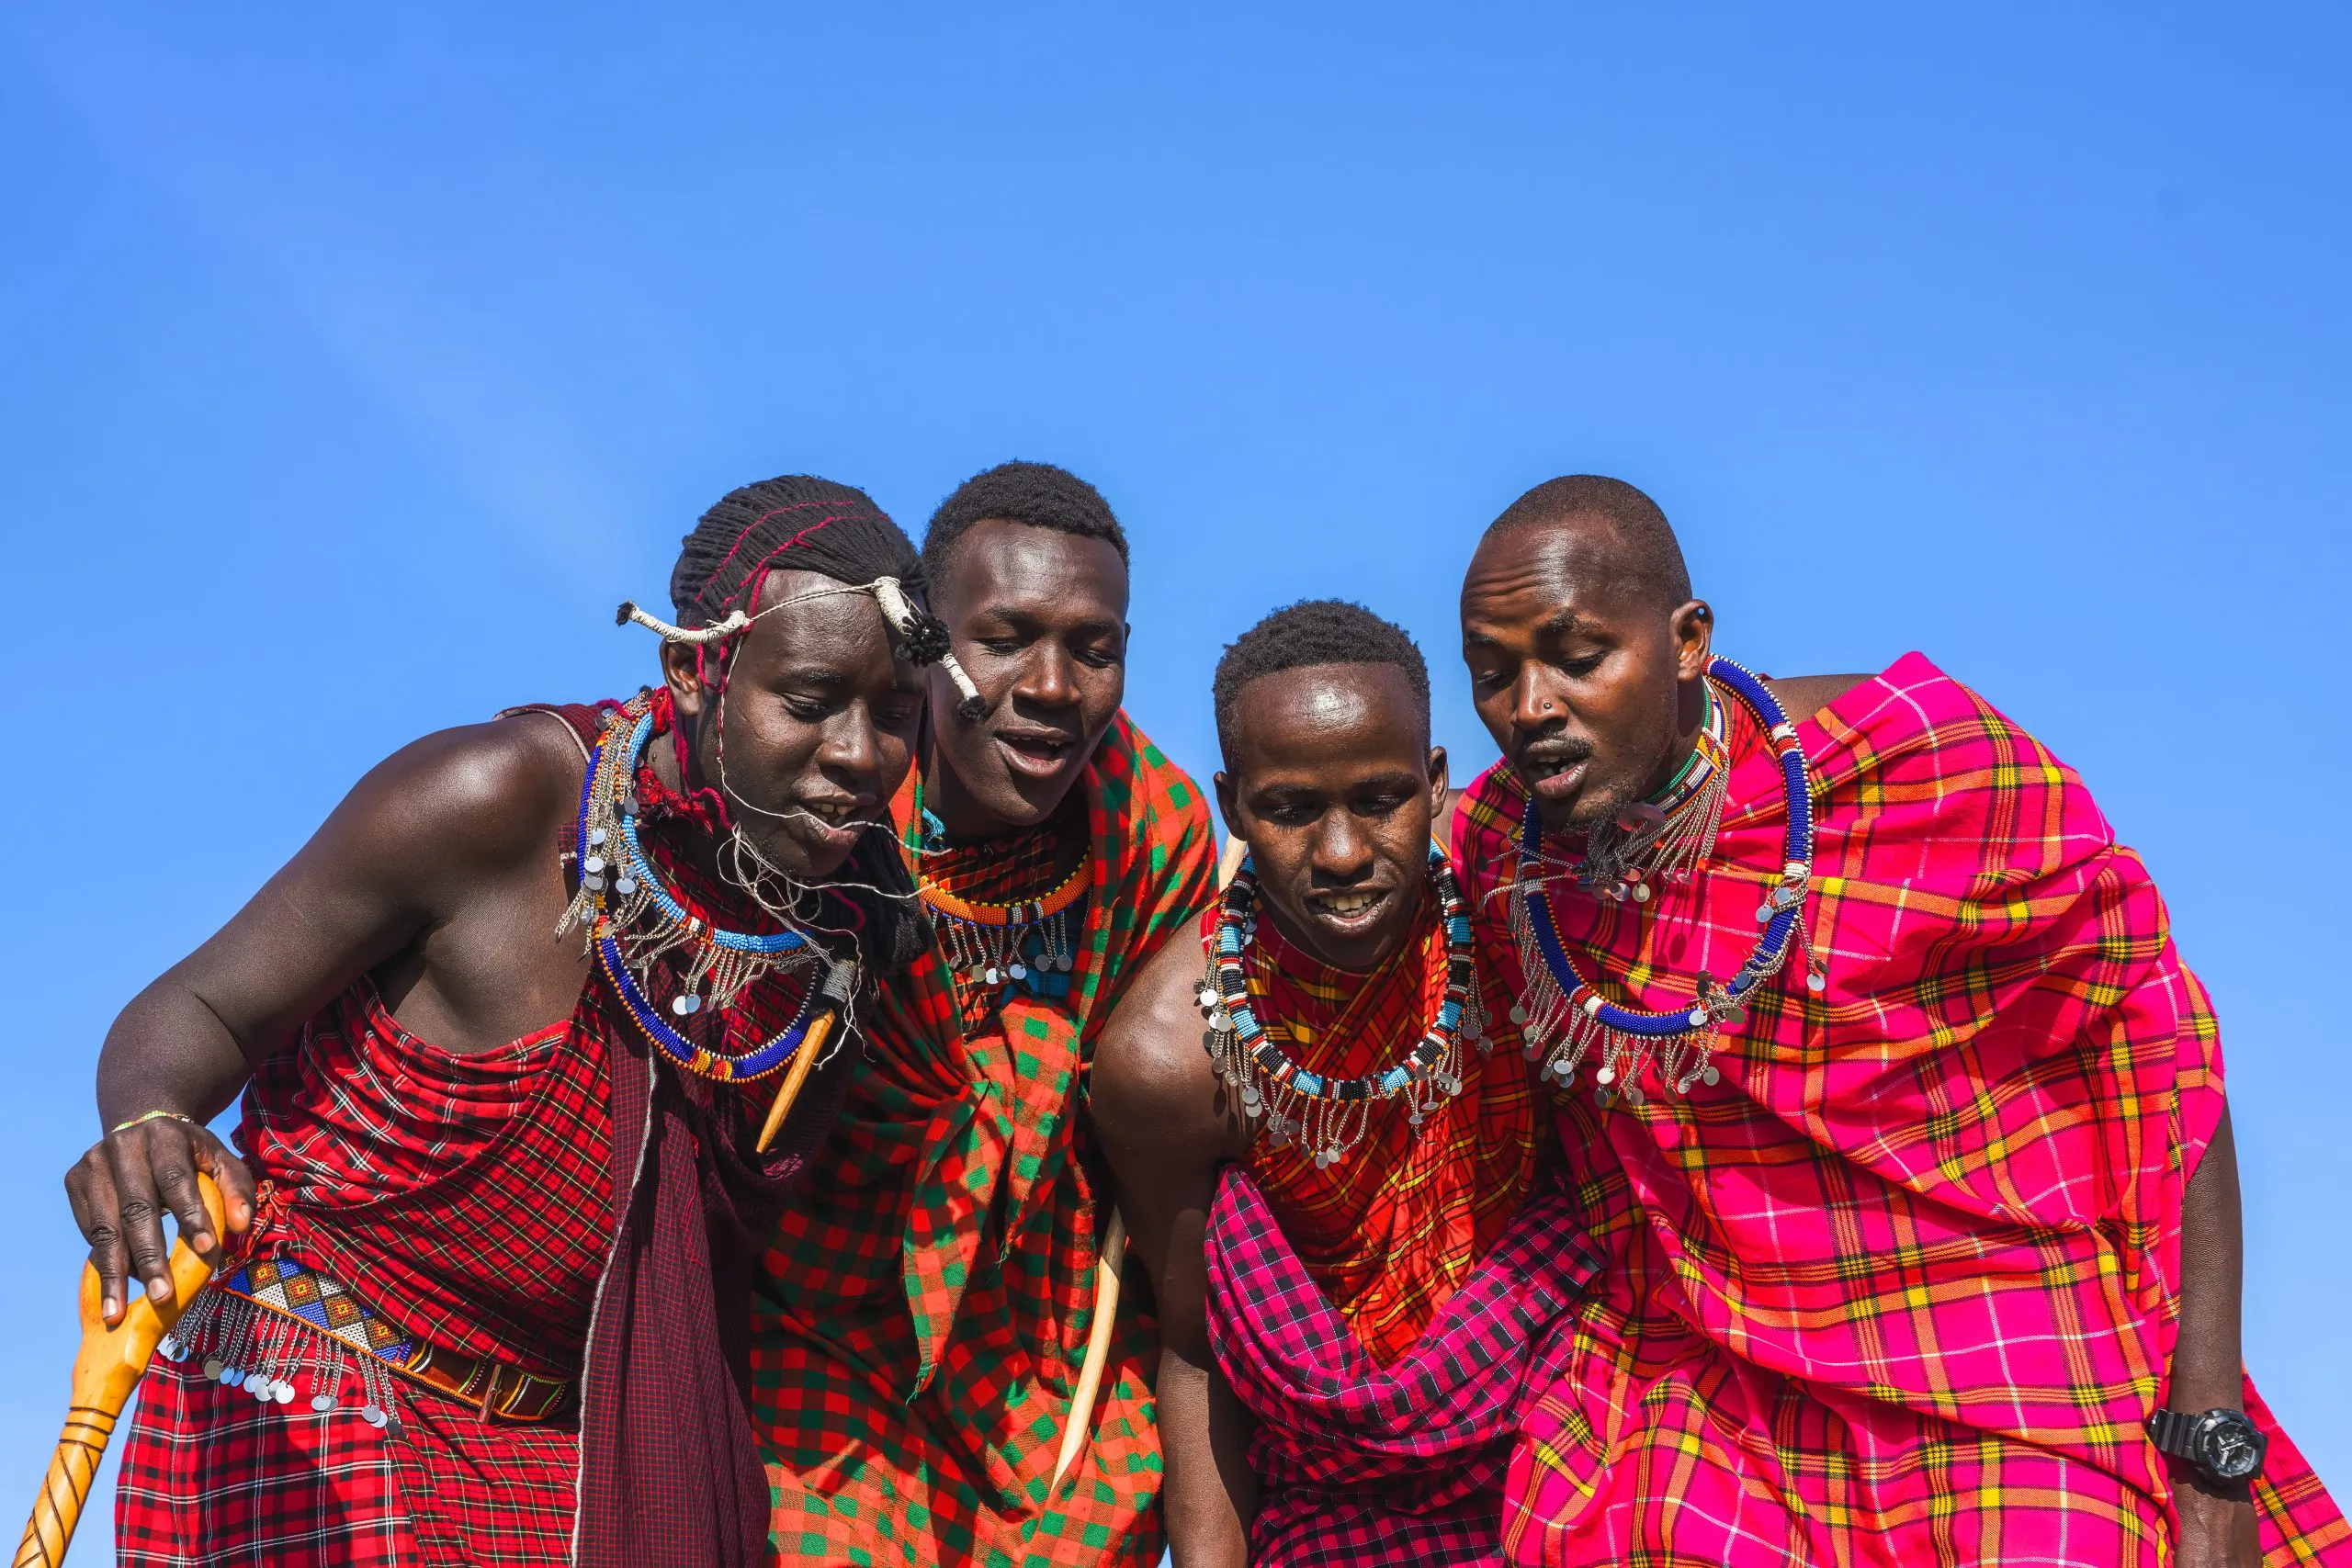 Mann fra Maasai Mara viser tradisjonell hoppedans for masaier